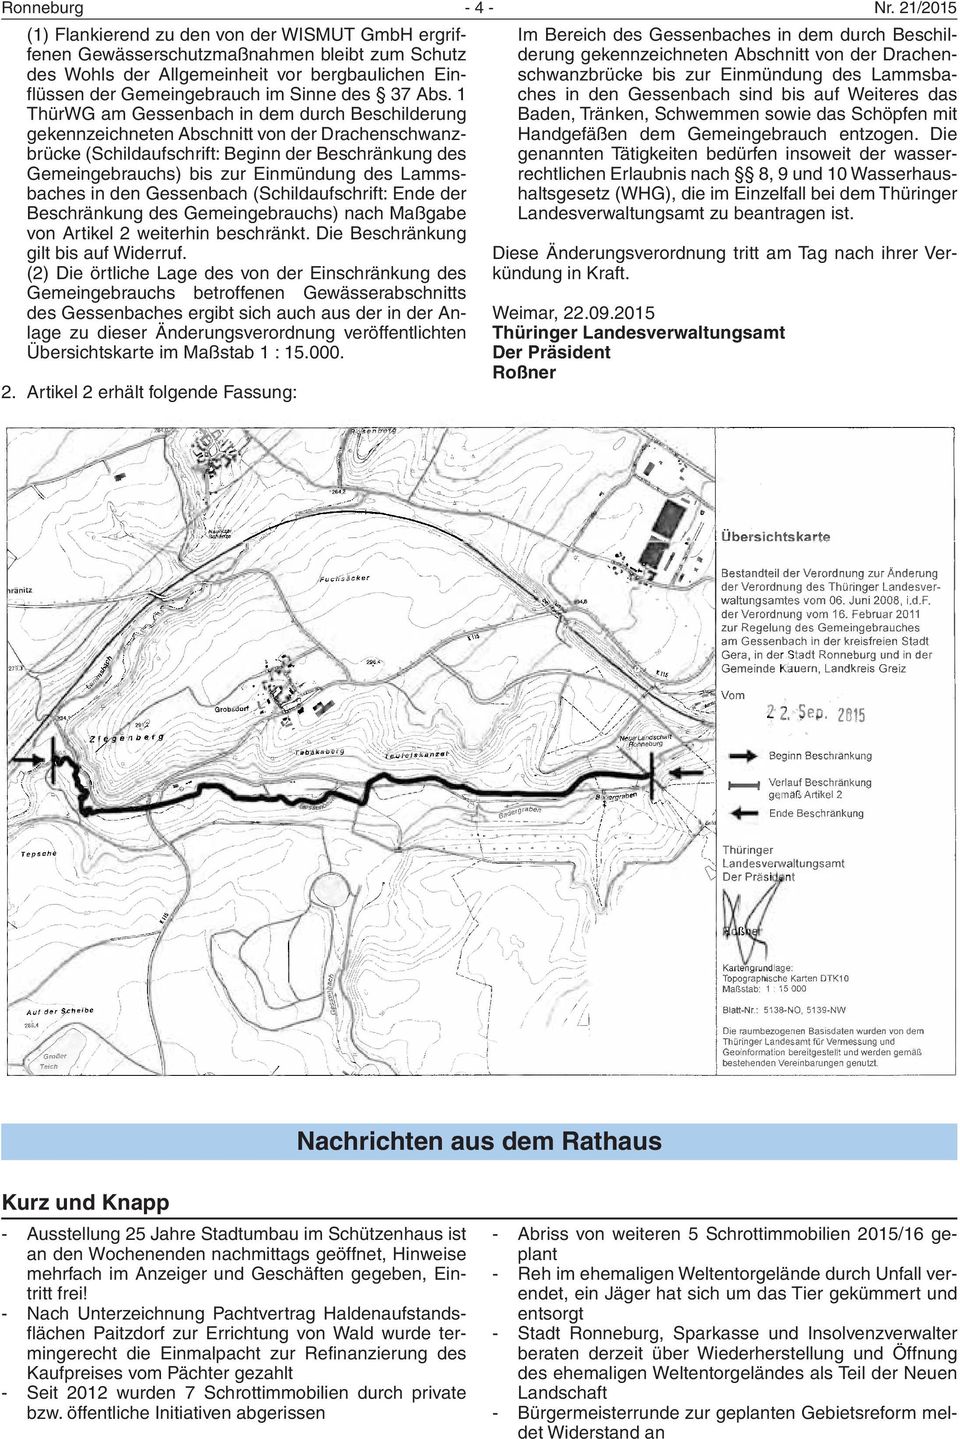 Abs. 1 ThürWG am Gessenbach in dem durch Beschilderung gekennzeichneten Abschnitt von der Drachenschwanzbrücke (Schildaufschrift: Beginn der Beschränkung des Gemeingebrauchs) bis zur Einmündung des